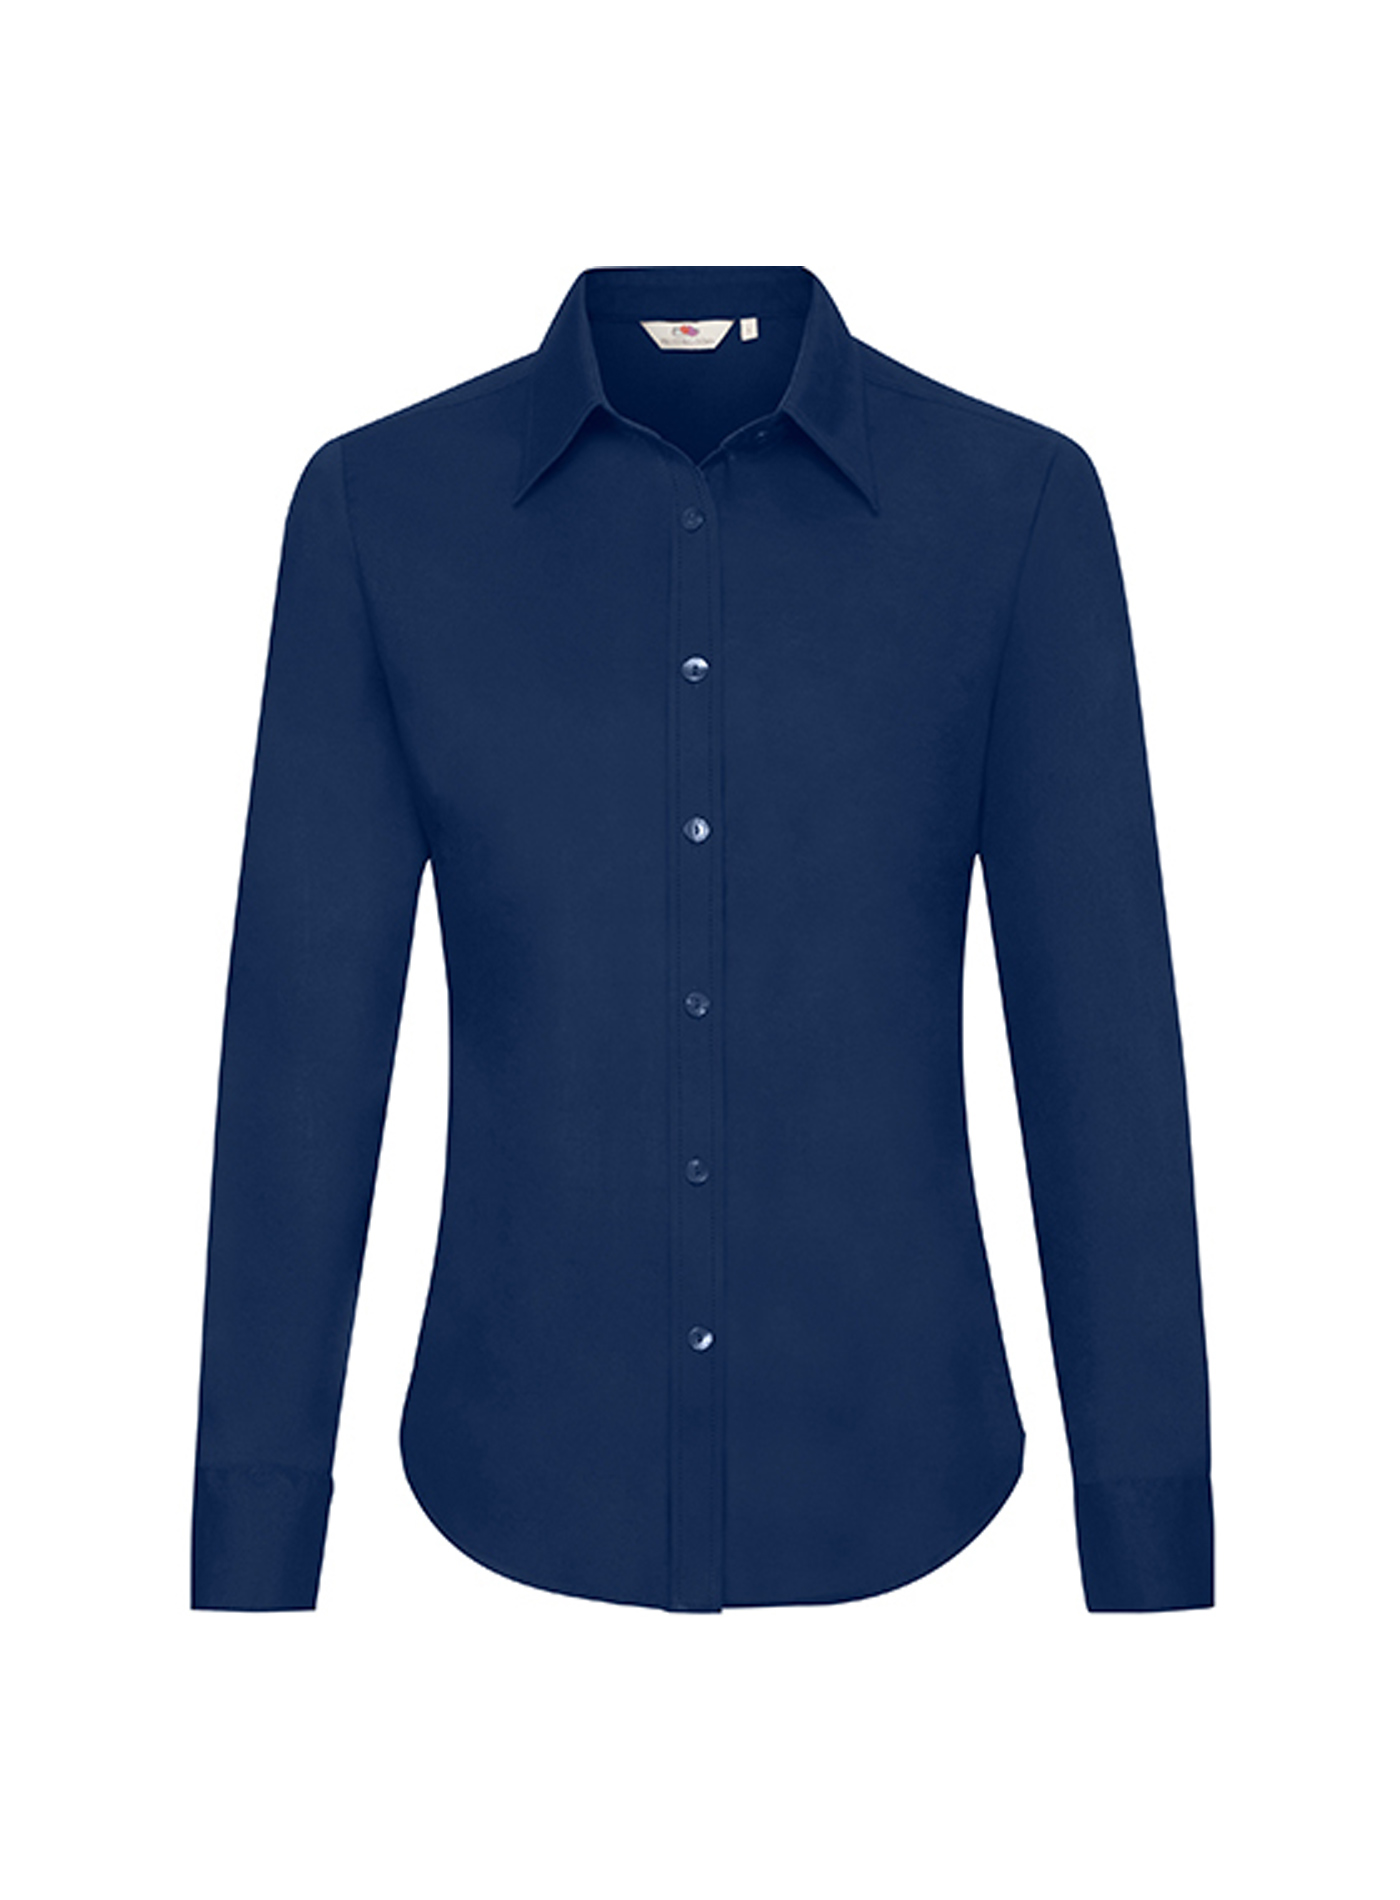 Dámská košile s dlouhým rukávem Fruit of the Loom Oxford - Námořnická modrá XS